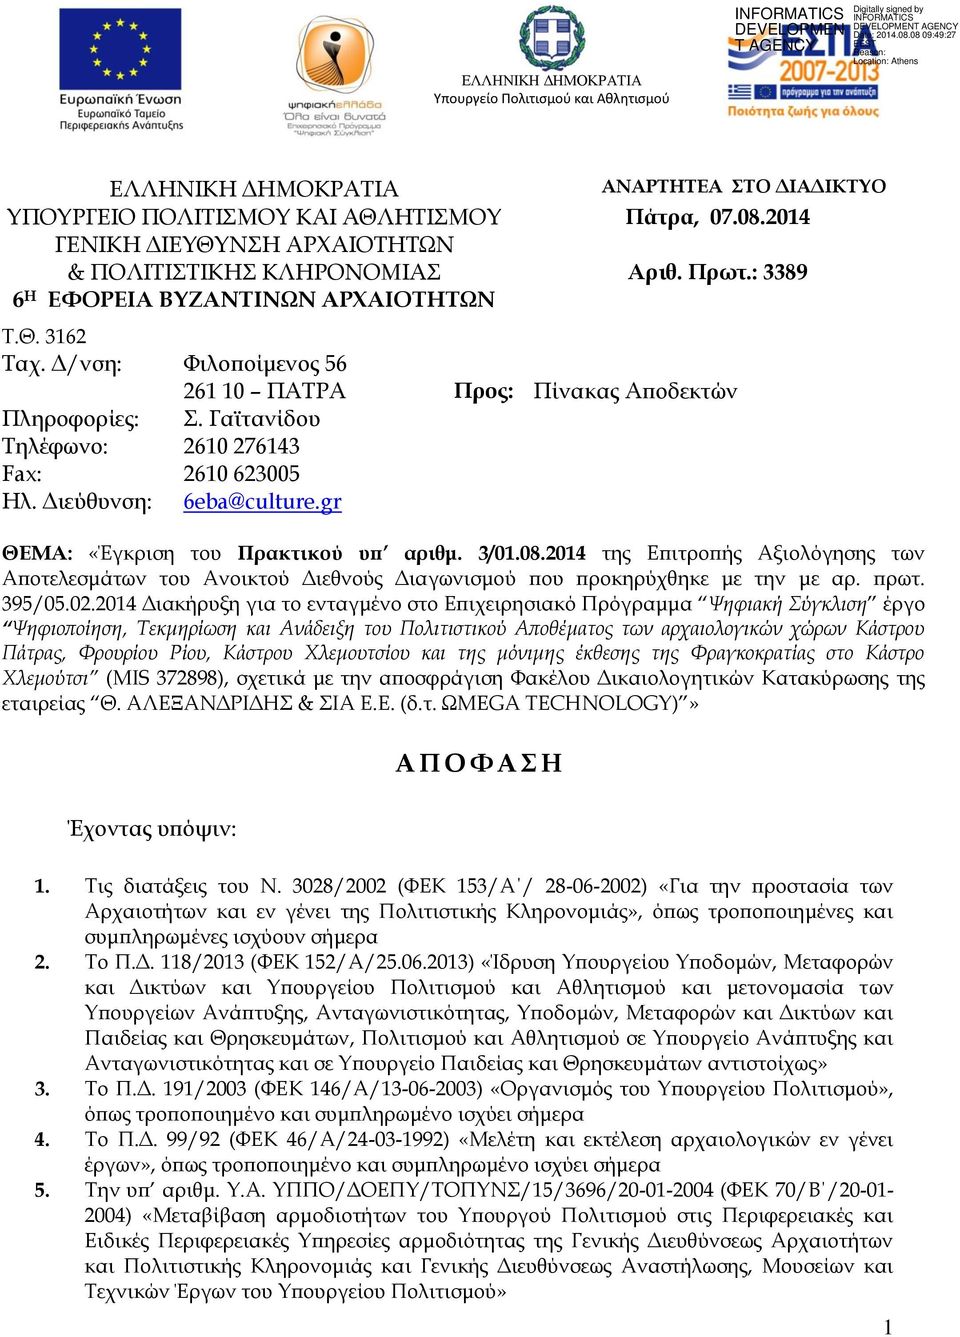 Διεύθυνση: 6eba@culture.gr ΘΕΜΑ: «Έγκριση του Πρακτικού υπ αριθμ. 3/01.08.2014 της Επιτροπής Αξιολόγησης των Αποτελεσμάτων του Ανοικτού Διεθνούς Διαγωνισμού που προκηρύχθηκε με την με αρ. πρωτ.